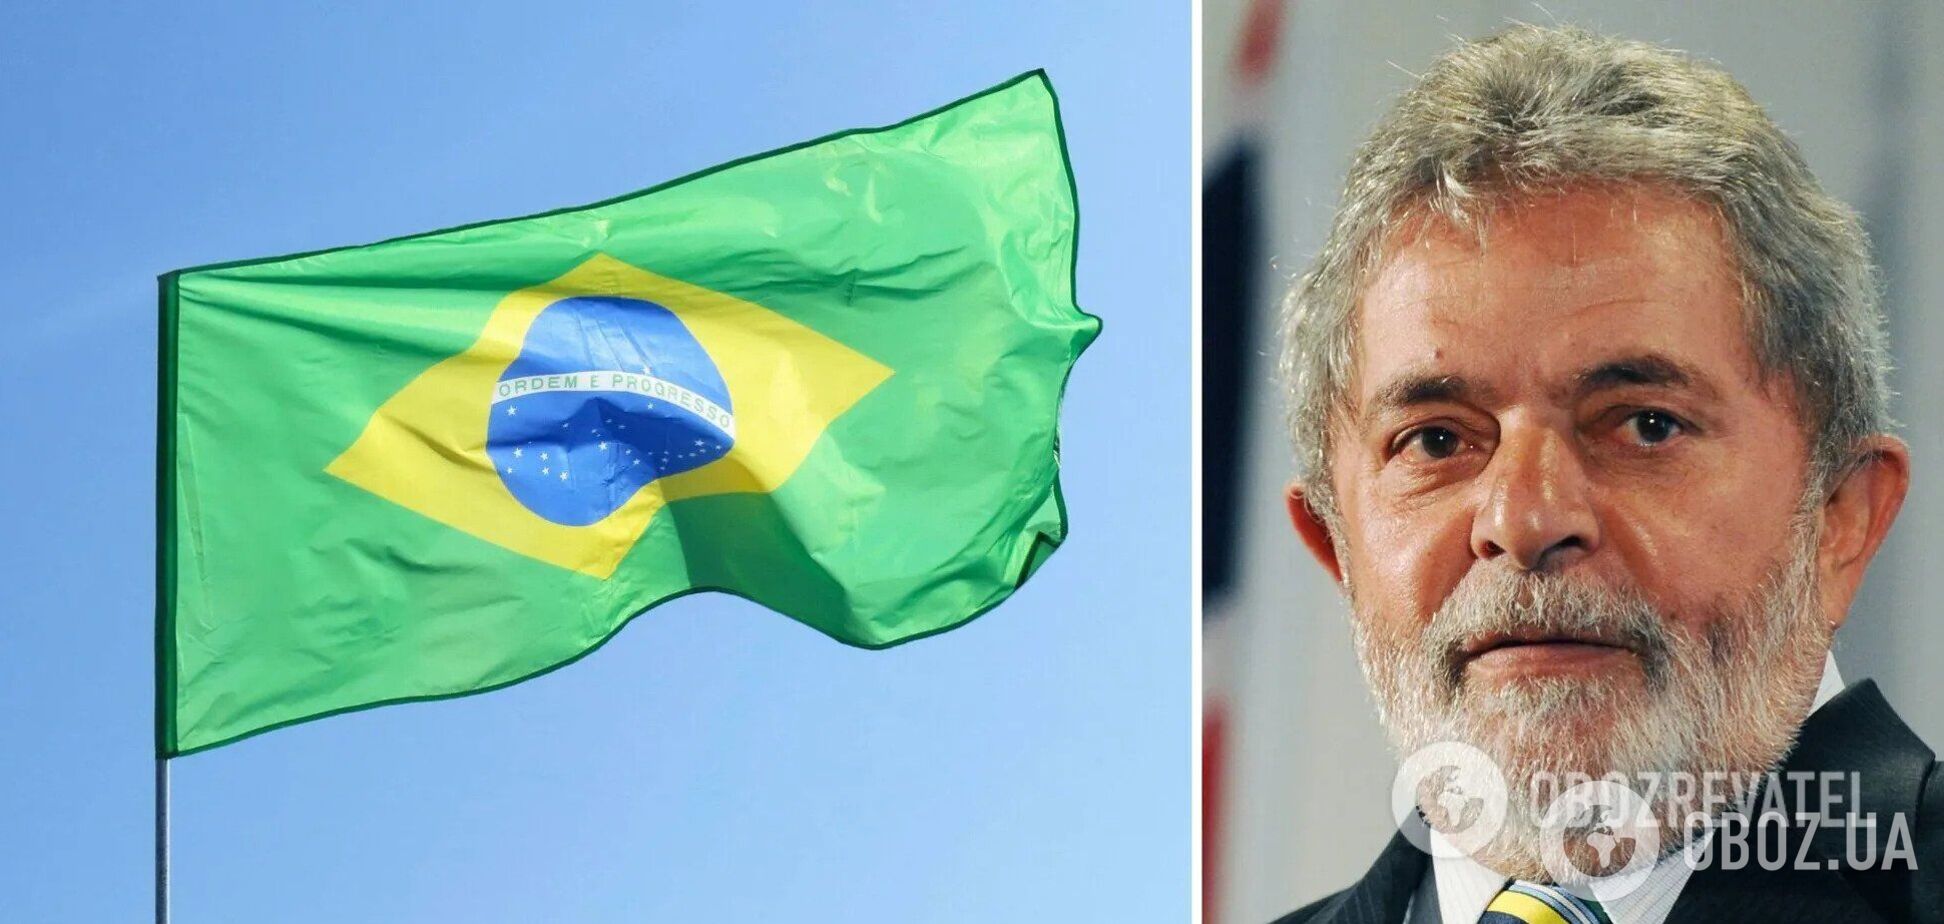 Президент Бразилии обвинял Украину в войне, а теперь сам стягивает войска к границам